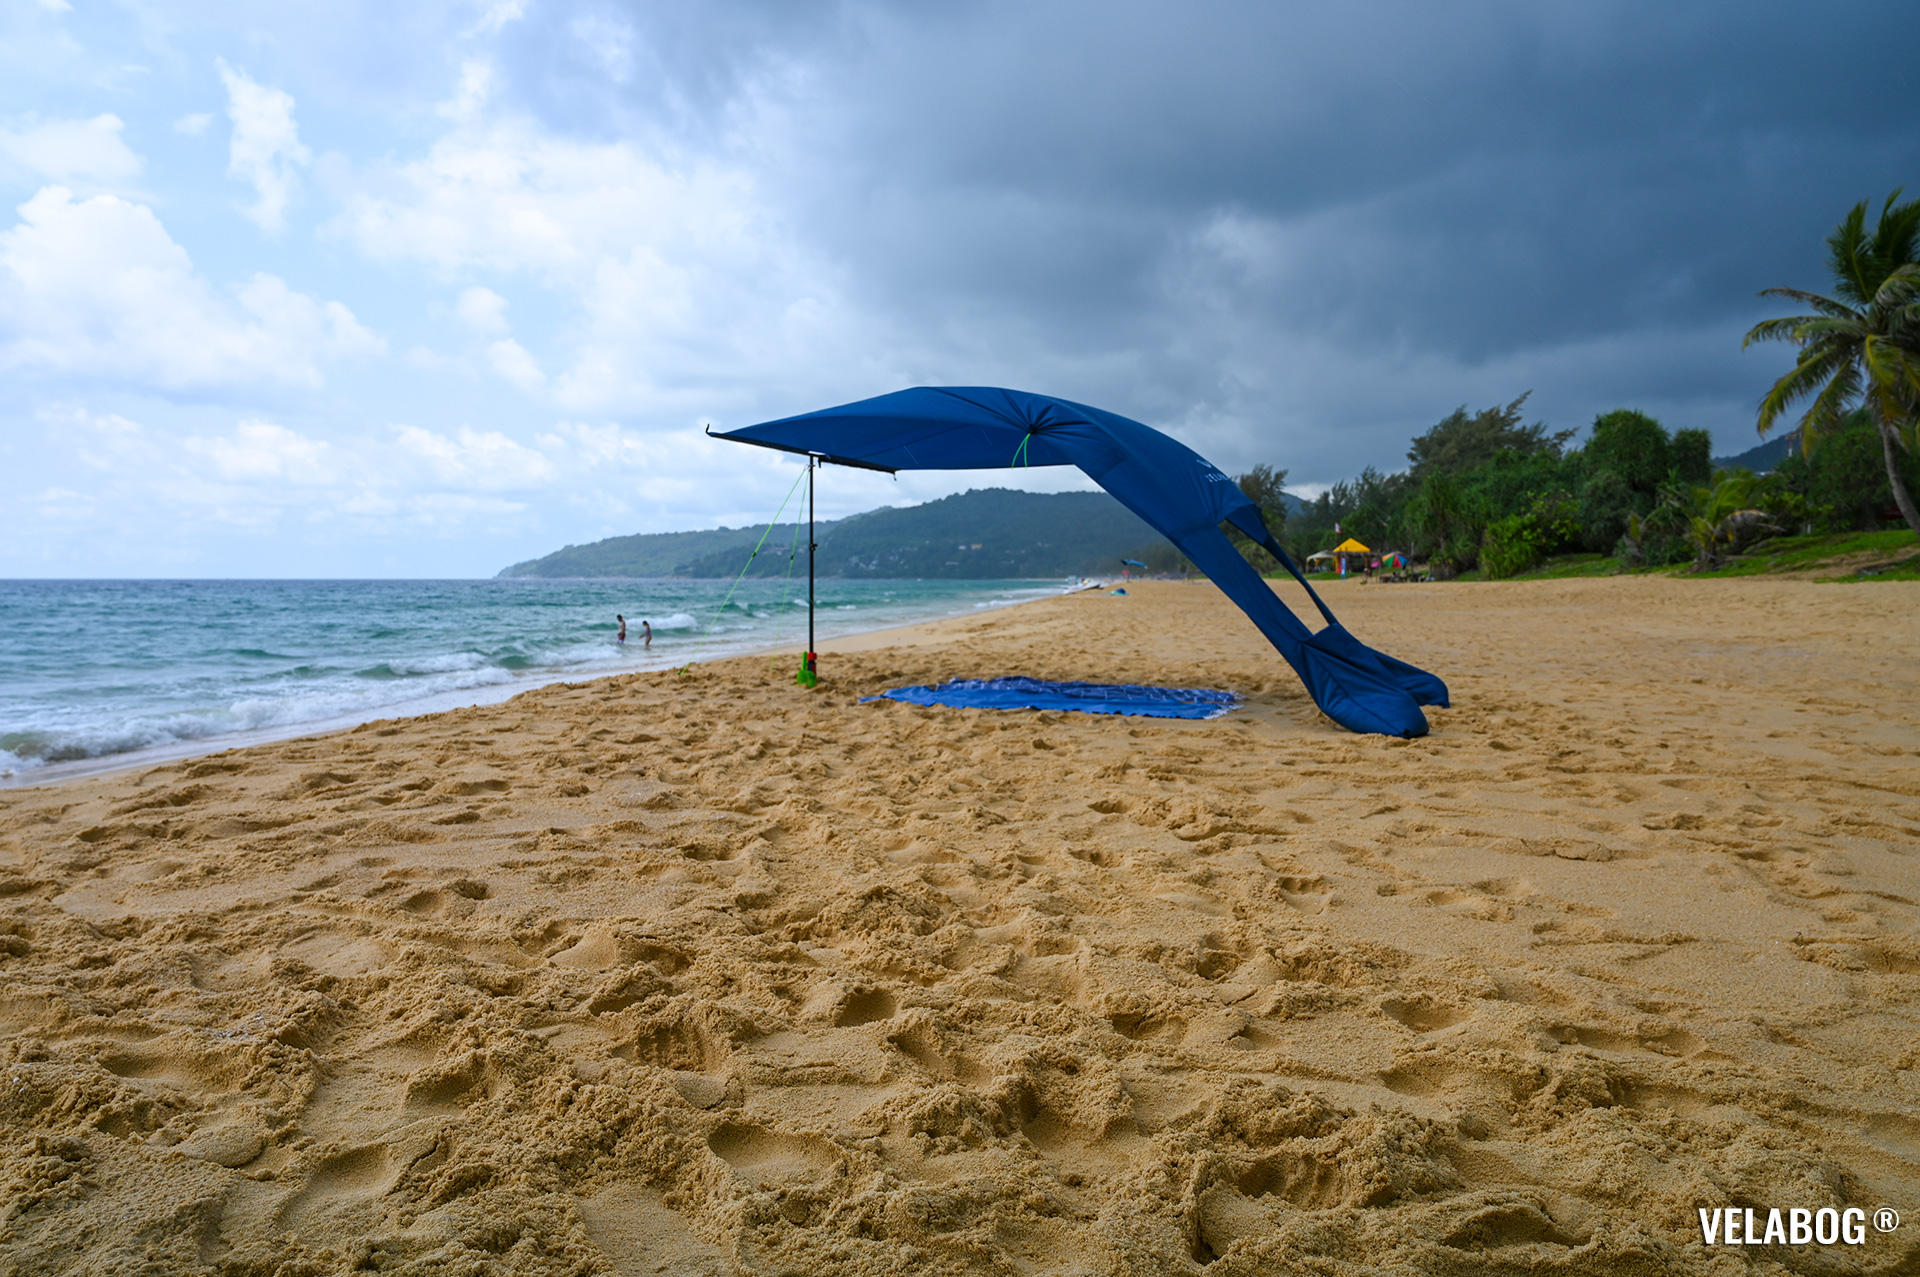 Strand Sonnensegel Strandzelt Velabog Breeze, nachtblau. Bester Regen- und Sonnenschutz Strand. Test Strand Sonnensegel Aufbauoption beim leichten bis starken Wind. Panorama.